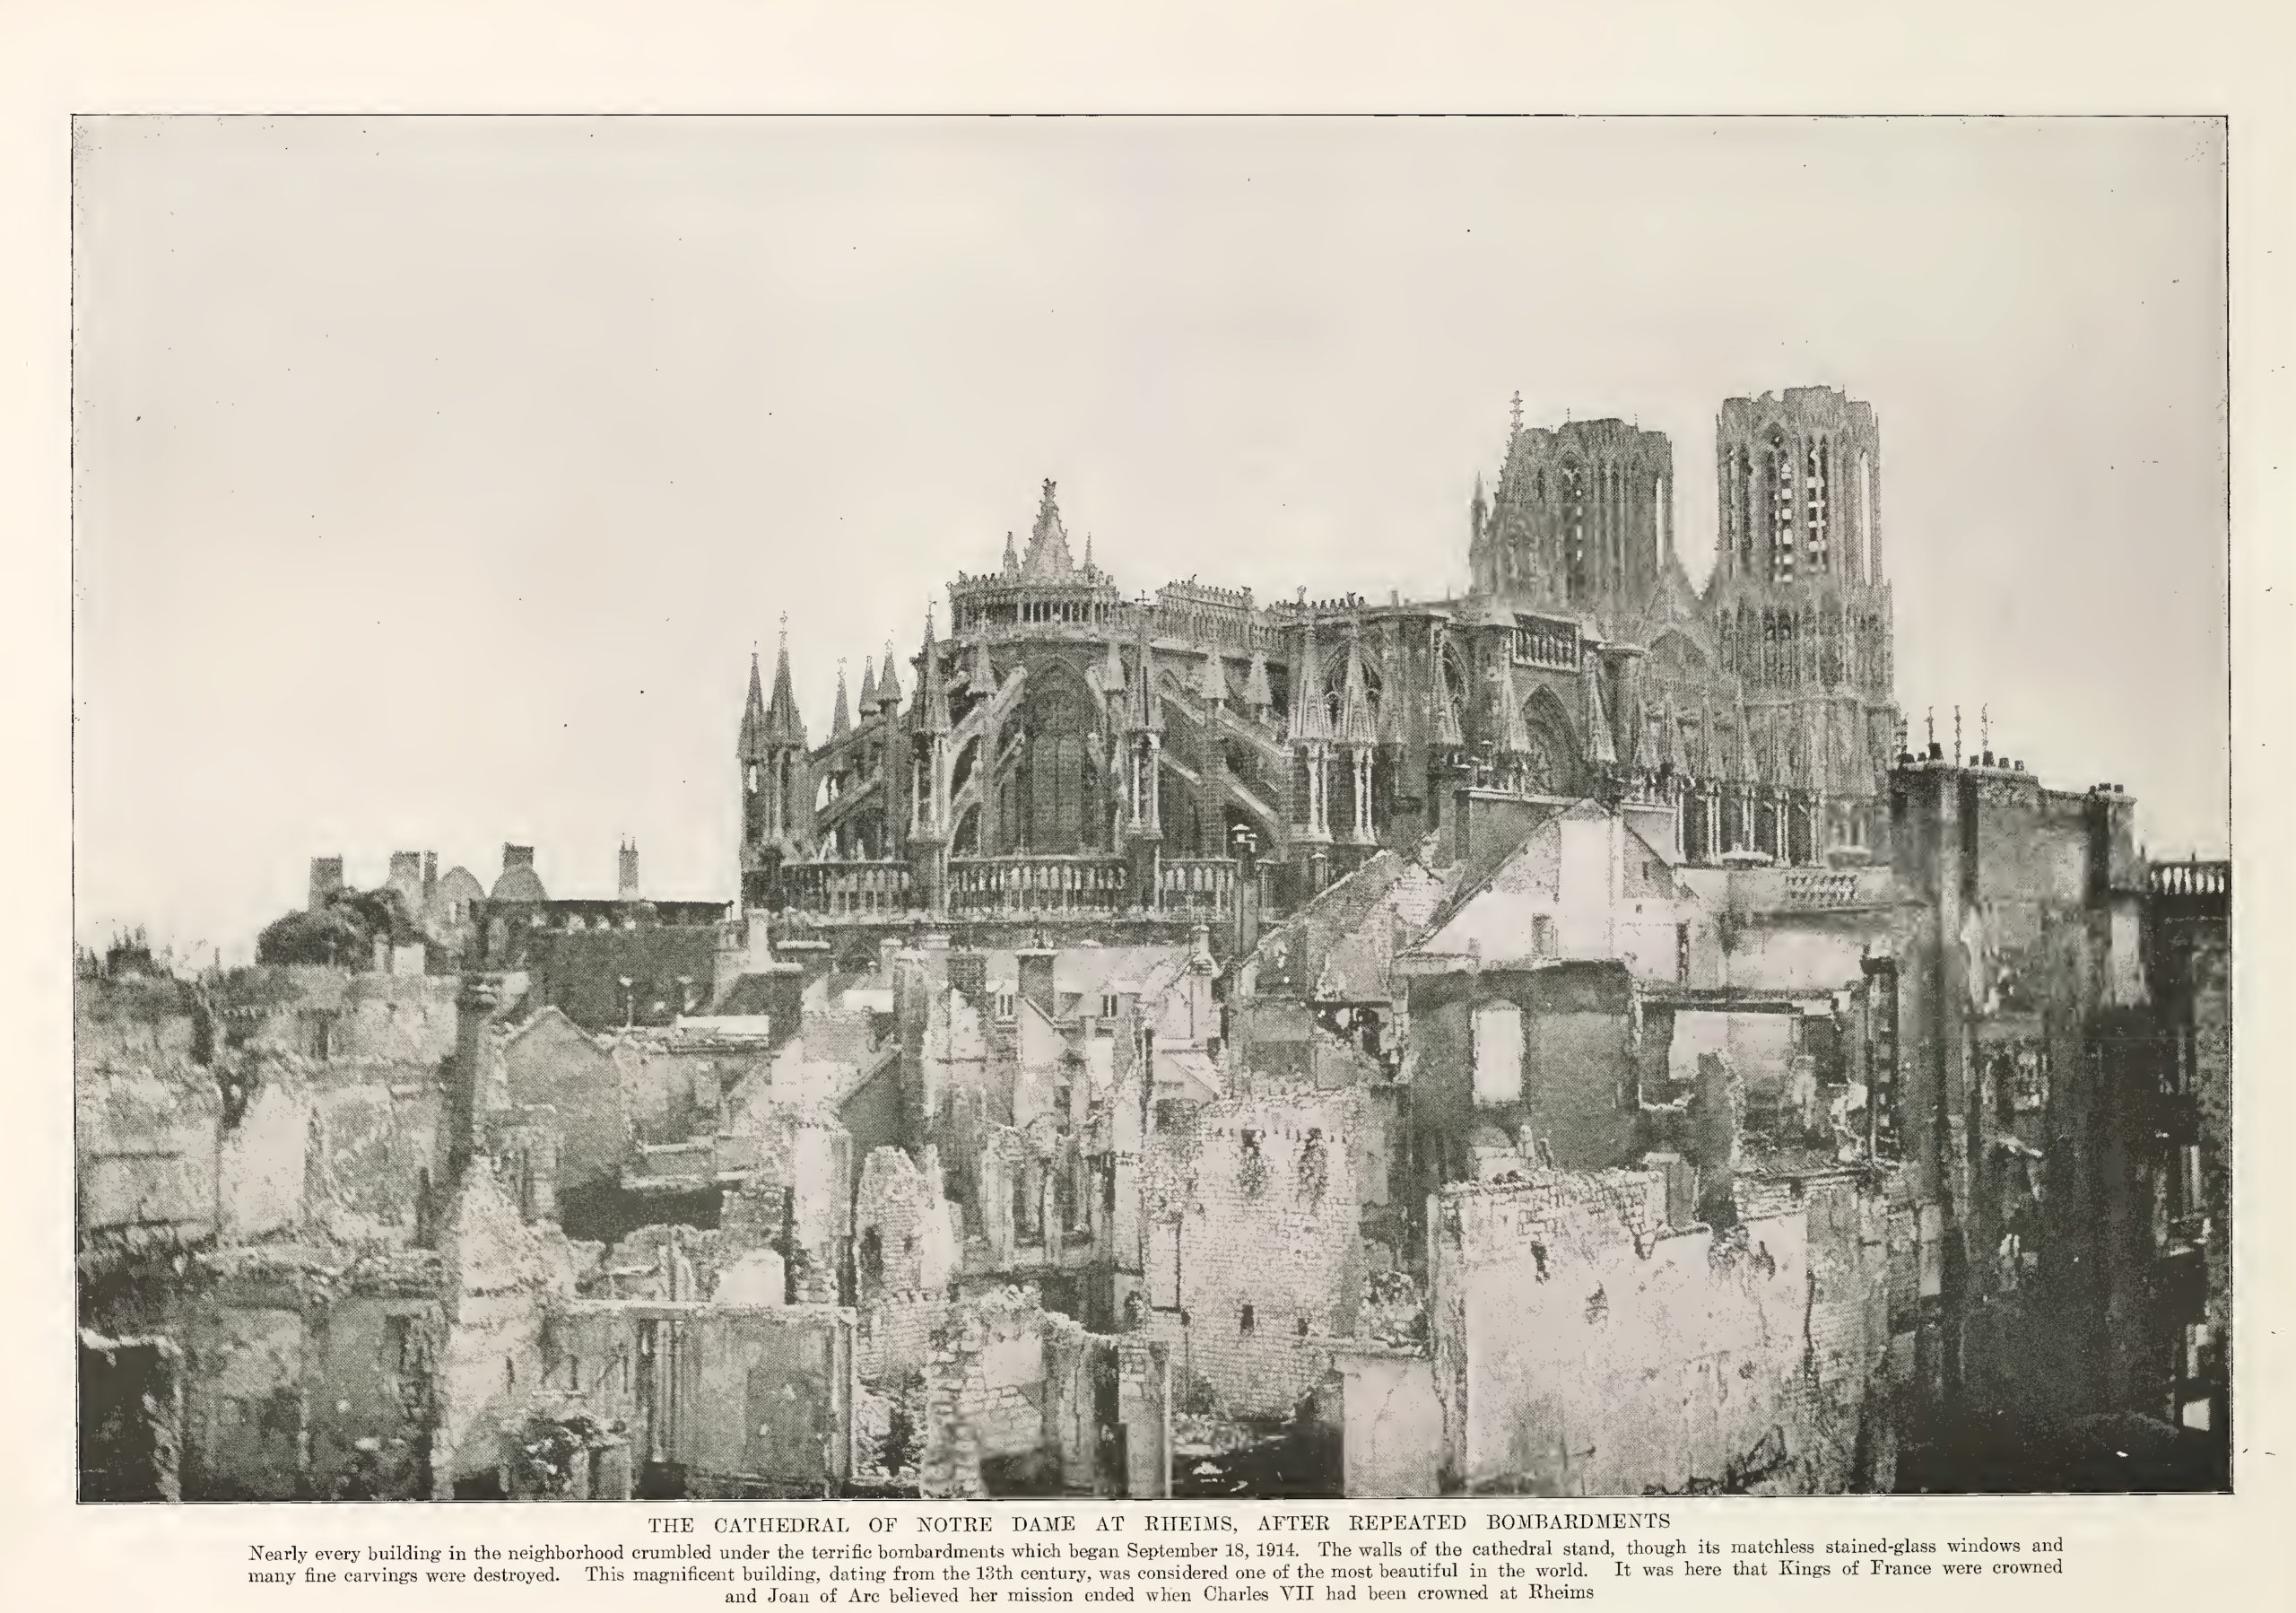 “La catedral de Notre Dame en Reims, después de repetidos bombardeos”, de Collier Photogrpahic History of the European War, de Francis J. Reynolds y C. W. Taylor, c. 1917